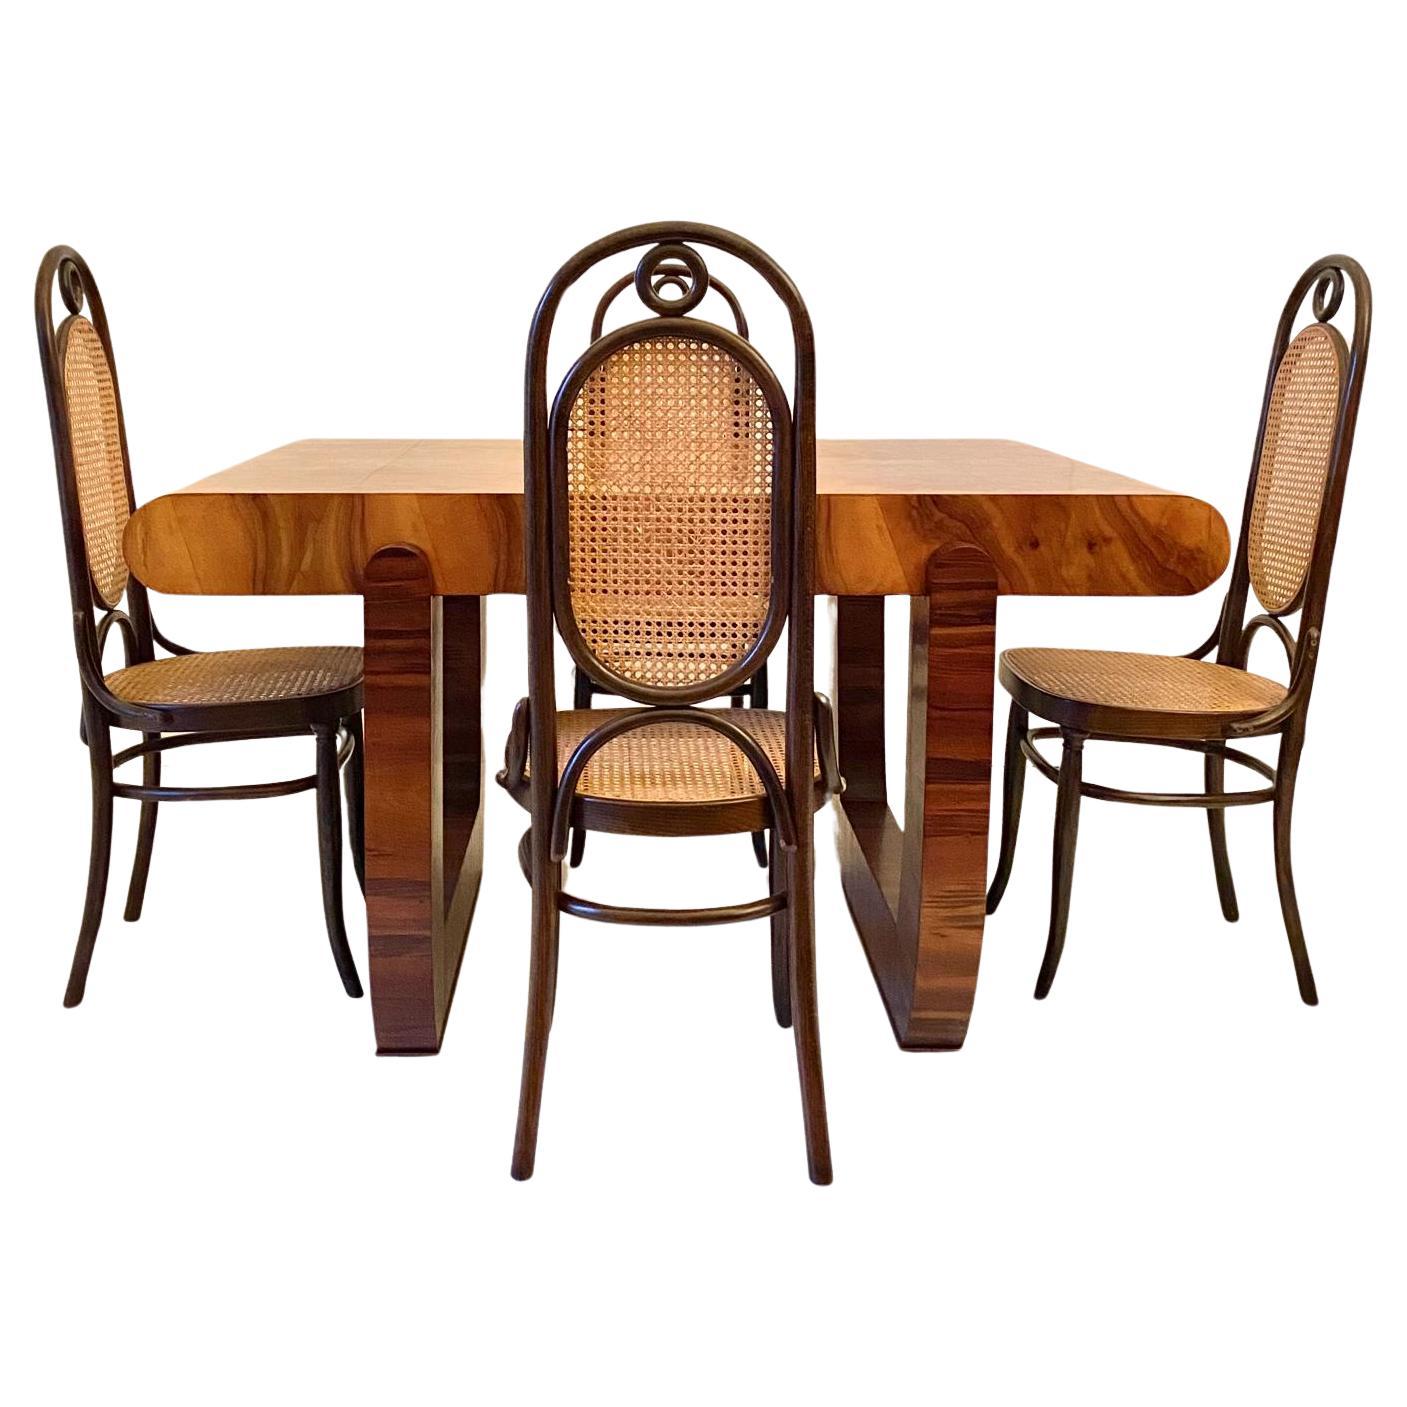 Ensemble de salle à manger Art déco réalisé par Art déco table en noyer avec plateau en racine de bruyère raffinée et quatre chaises Thonet 